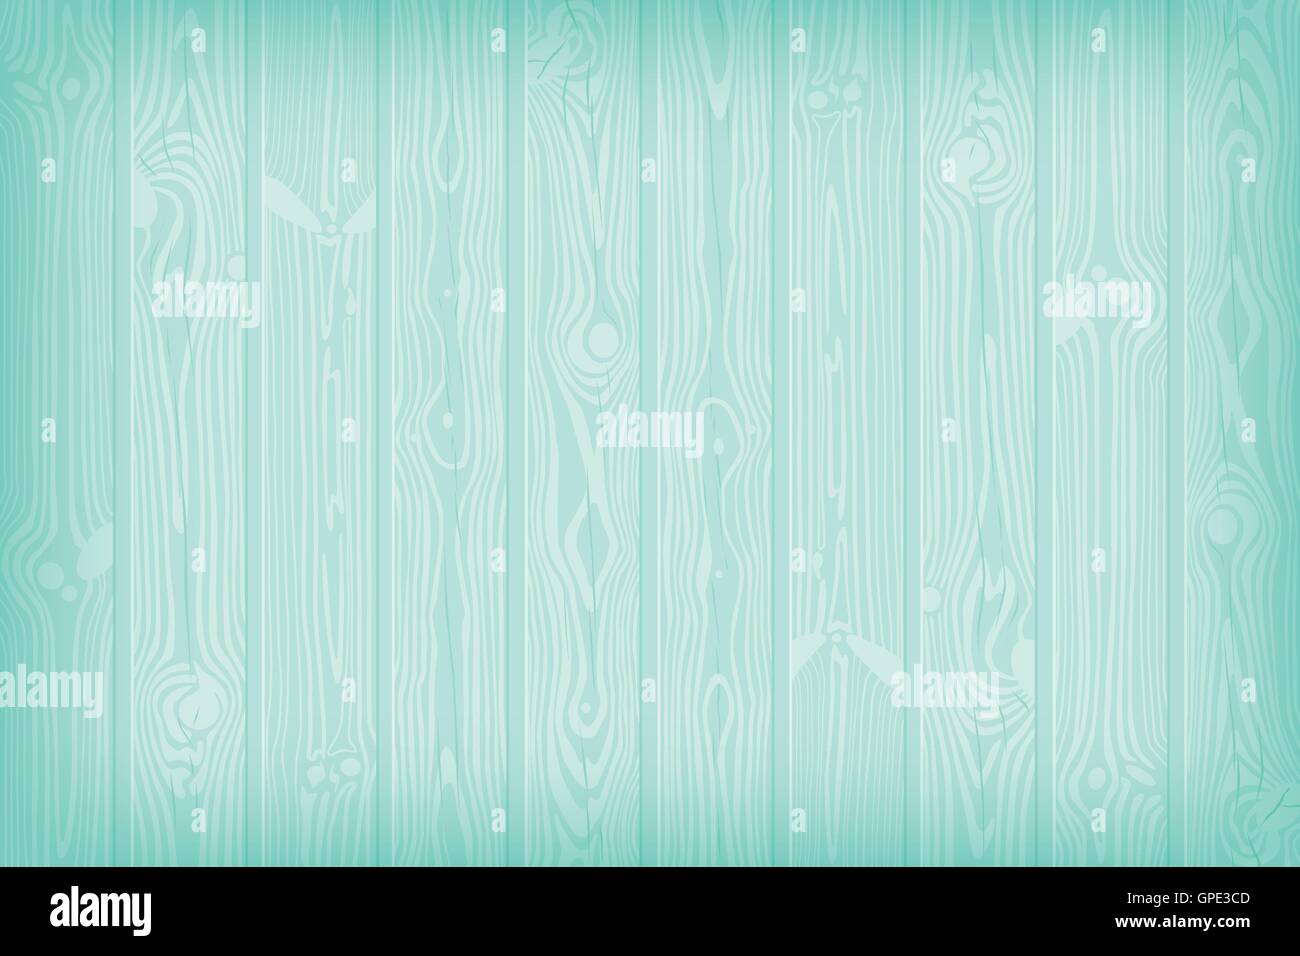 Blau strukturiert hölzernen Hintergrund mit Äste und Risse Sommer-Vektor-illustration Stock Vektor